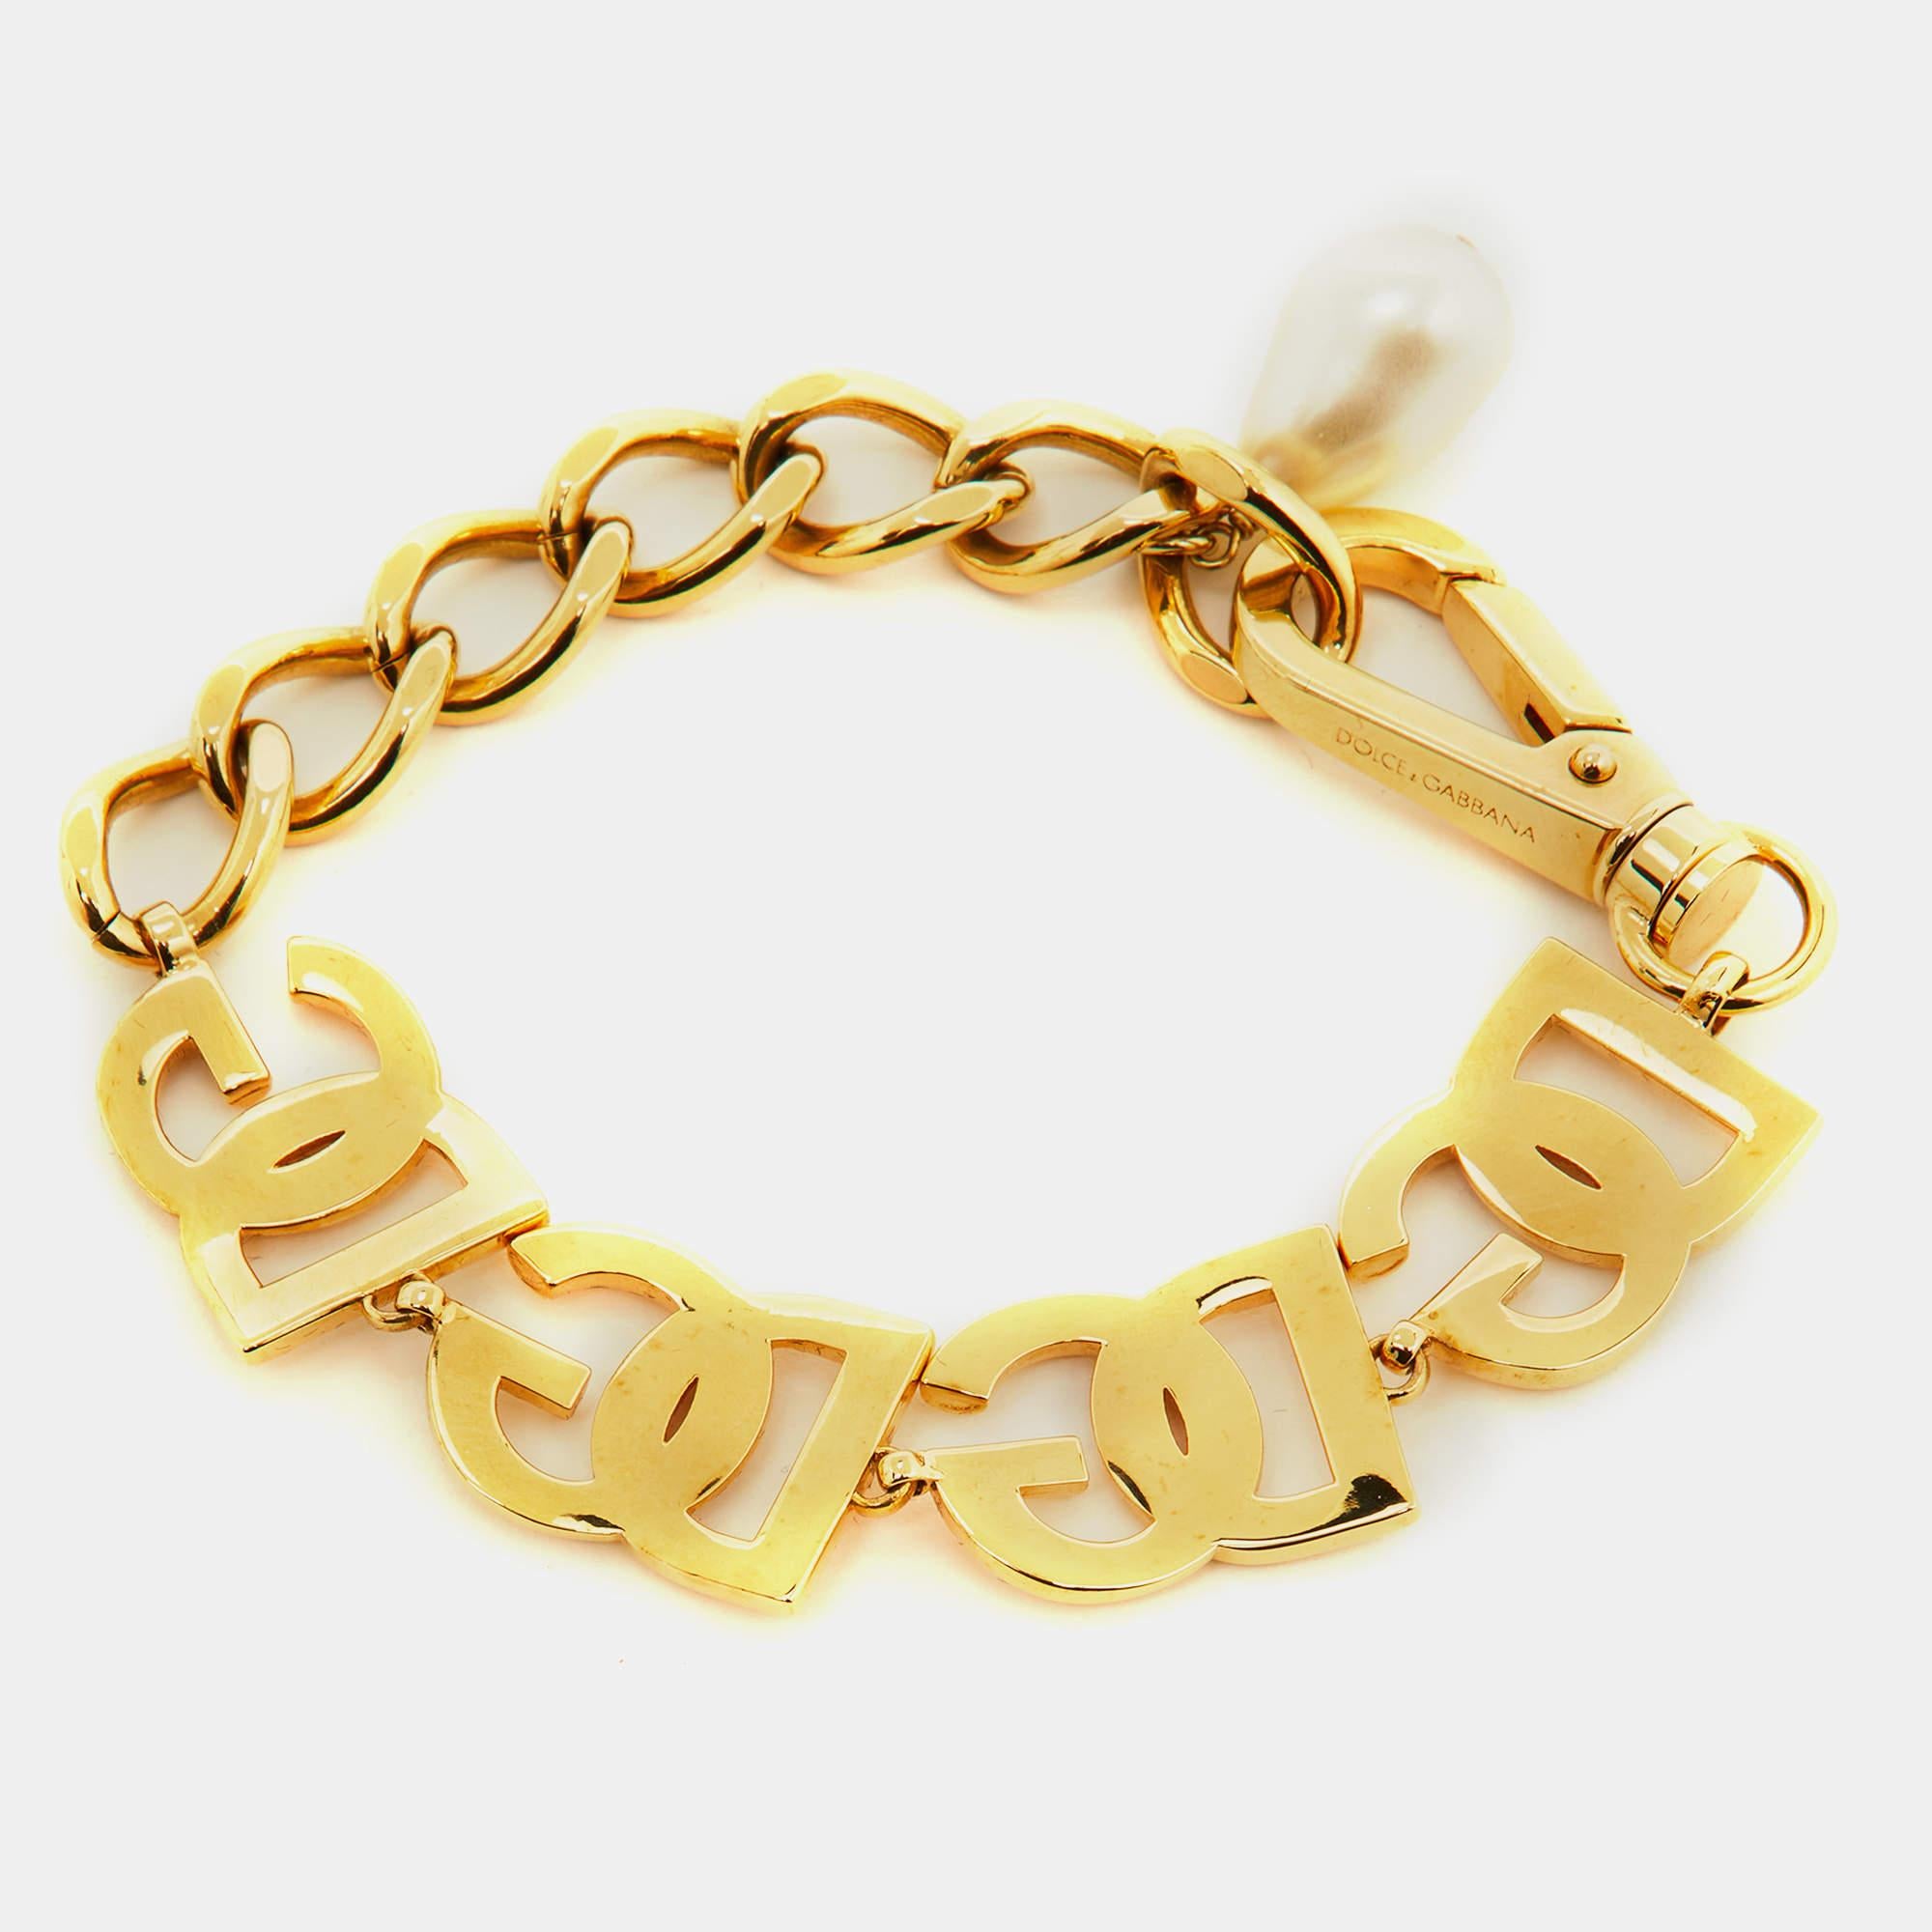 Dieses elegante Armband von Dolce & Gabbana kann nach dem Kauf immer wieder getragen werden. Es wird nie aus der Mode kommen. Dieser aus goldfarbenem Metall gefertigte Armreif ist mit dem DG-Logo verziert.

